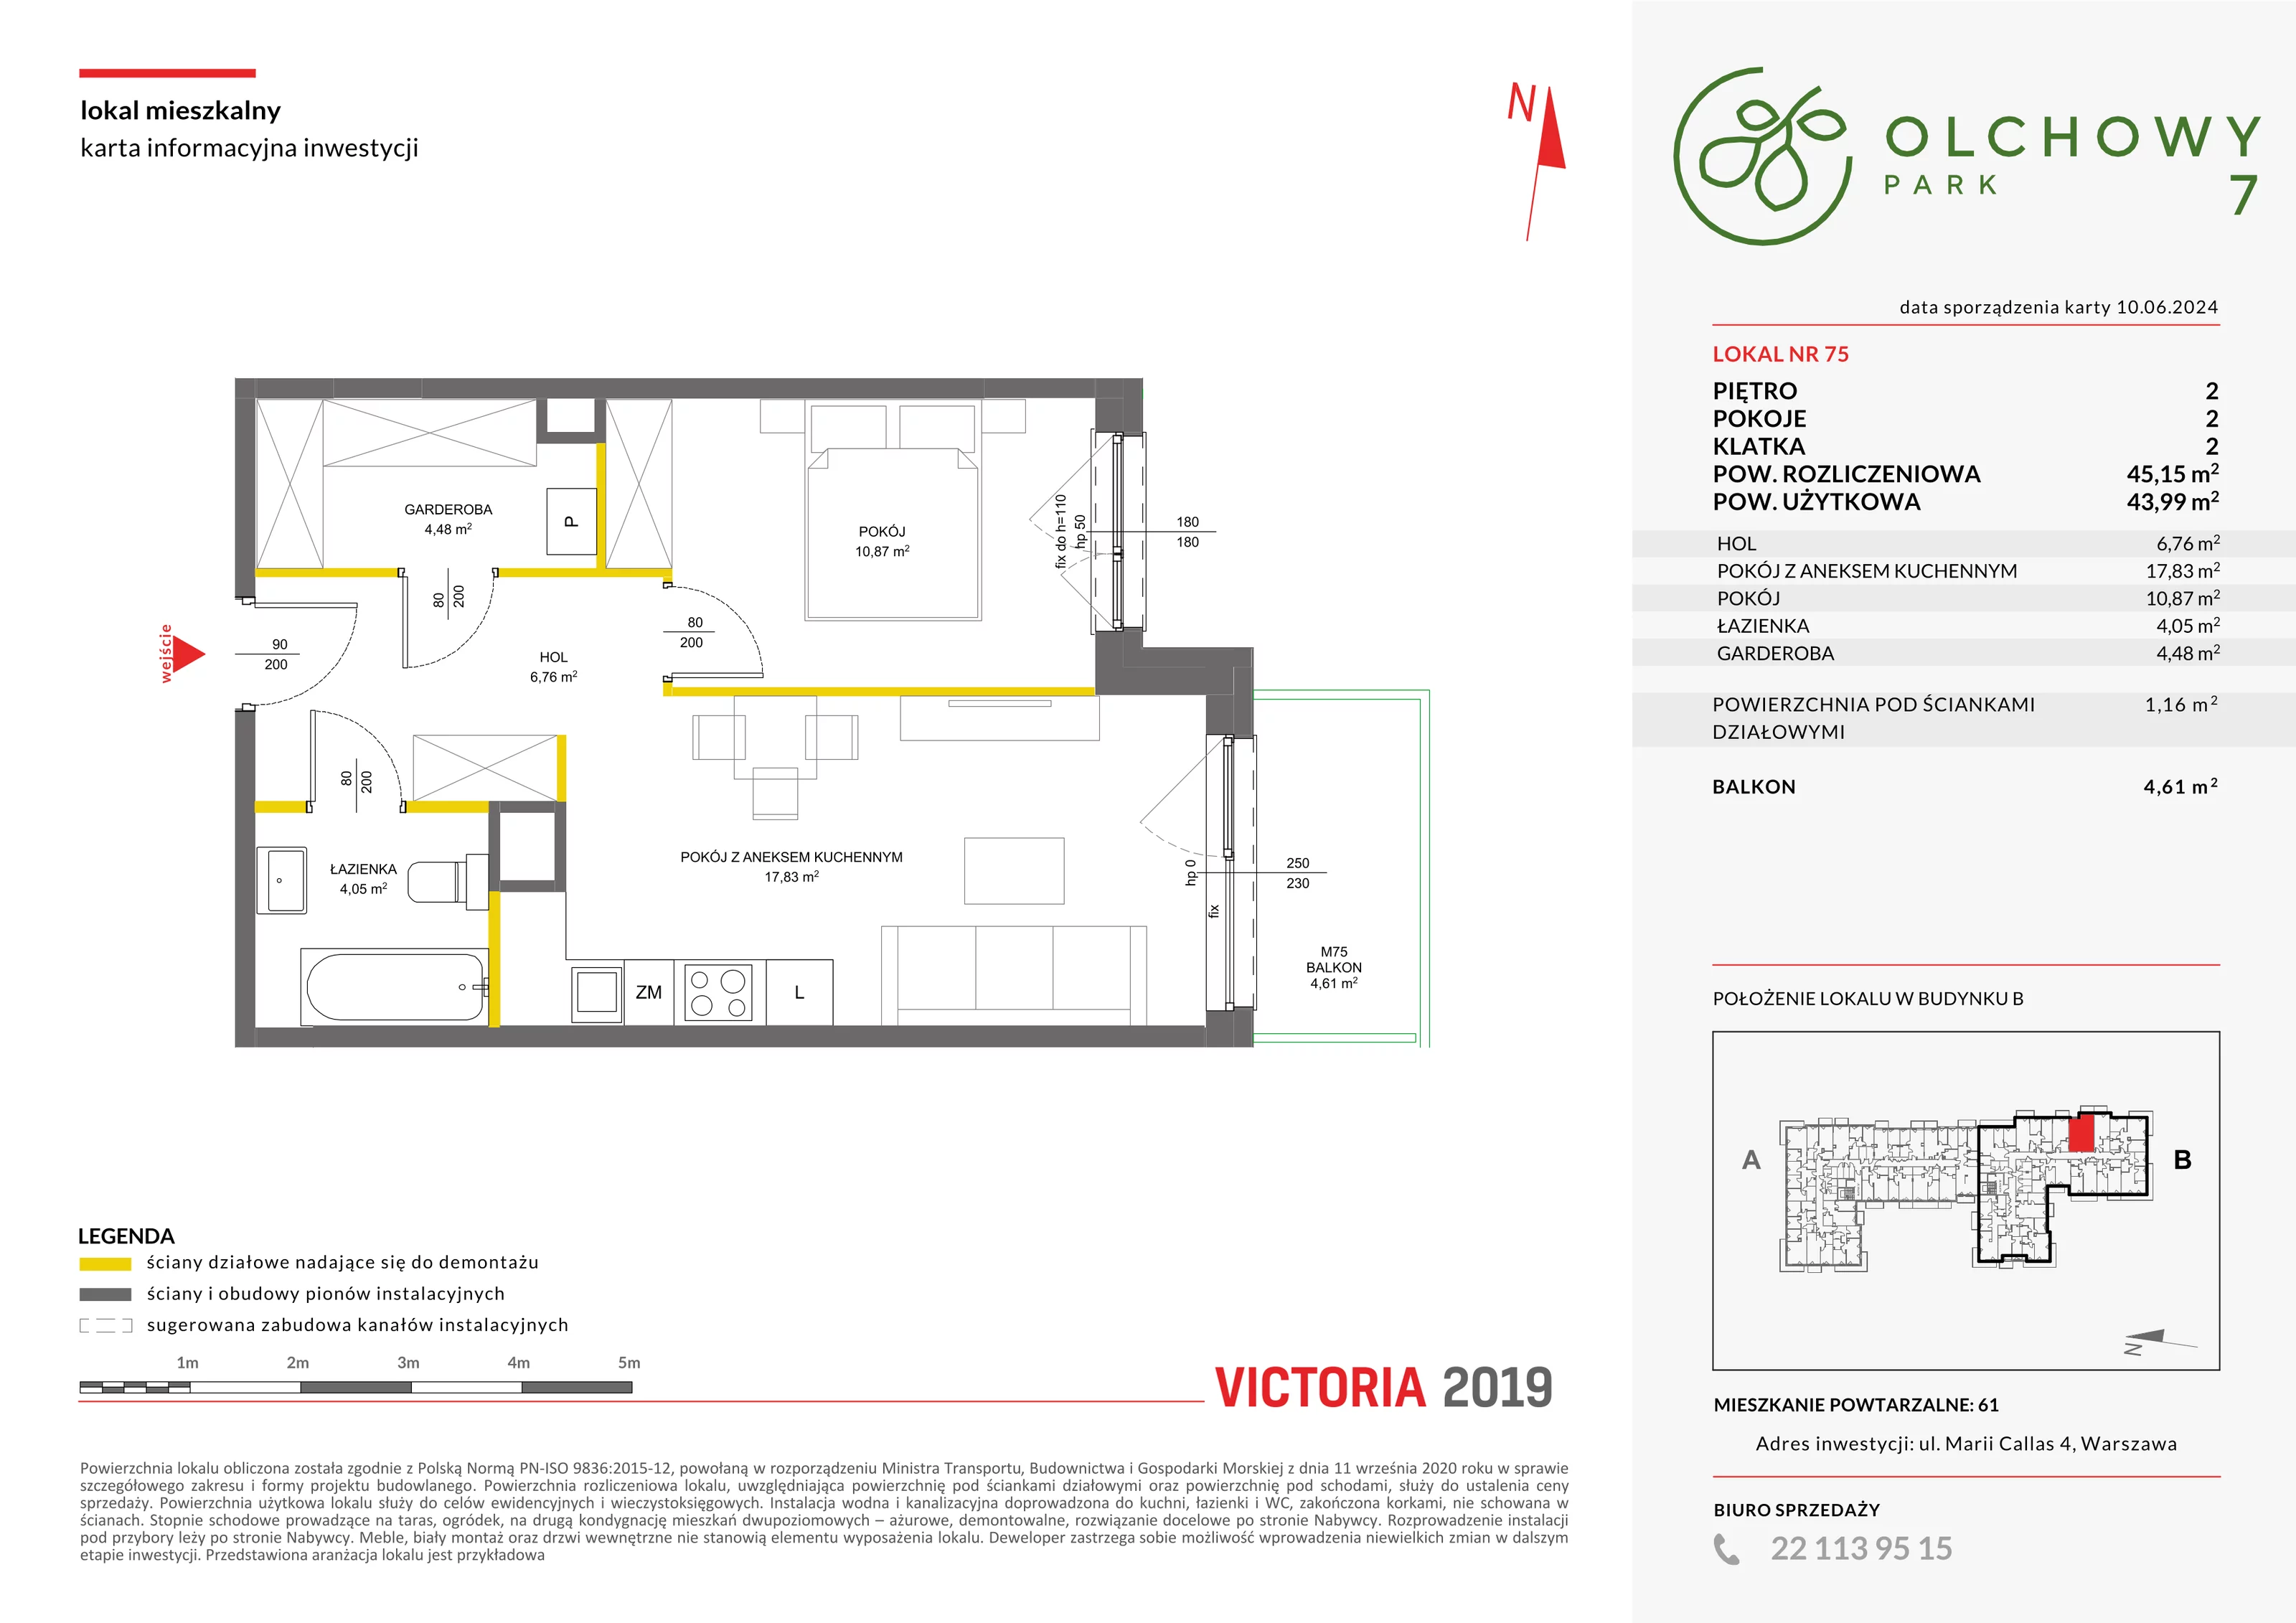 Mieszkanie 45,15 m², piętro 2, oferta nr VII/75, Olchowy Park 7, Warszawa, Białołęka, Kobiałka, ul. Marii Callas 4A